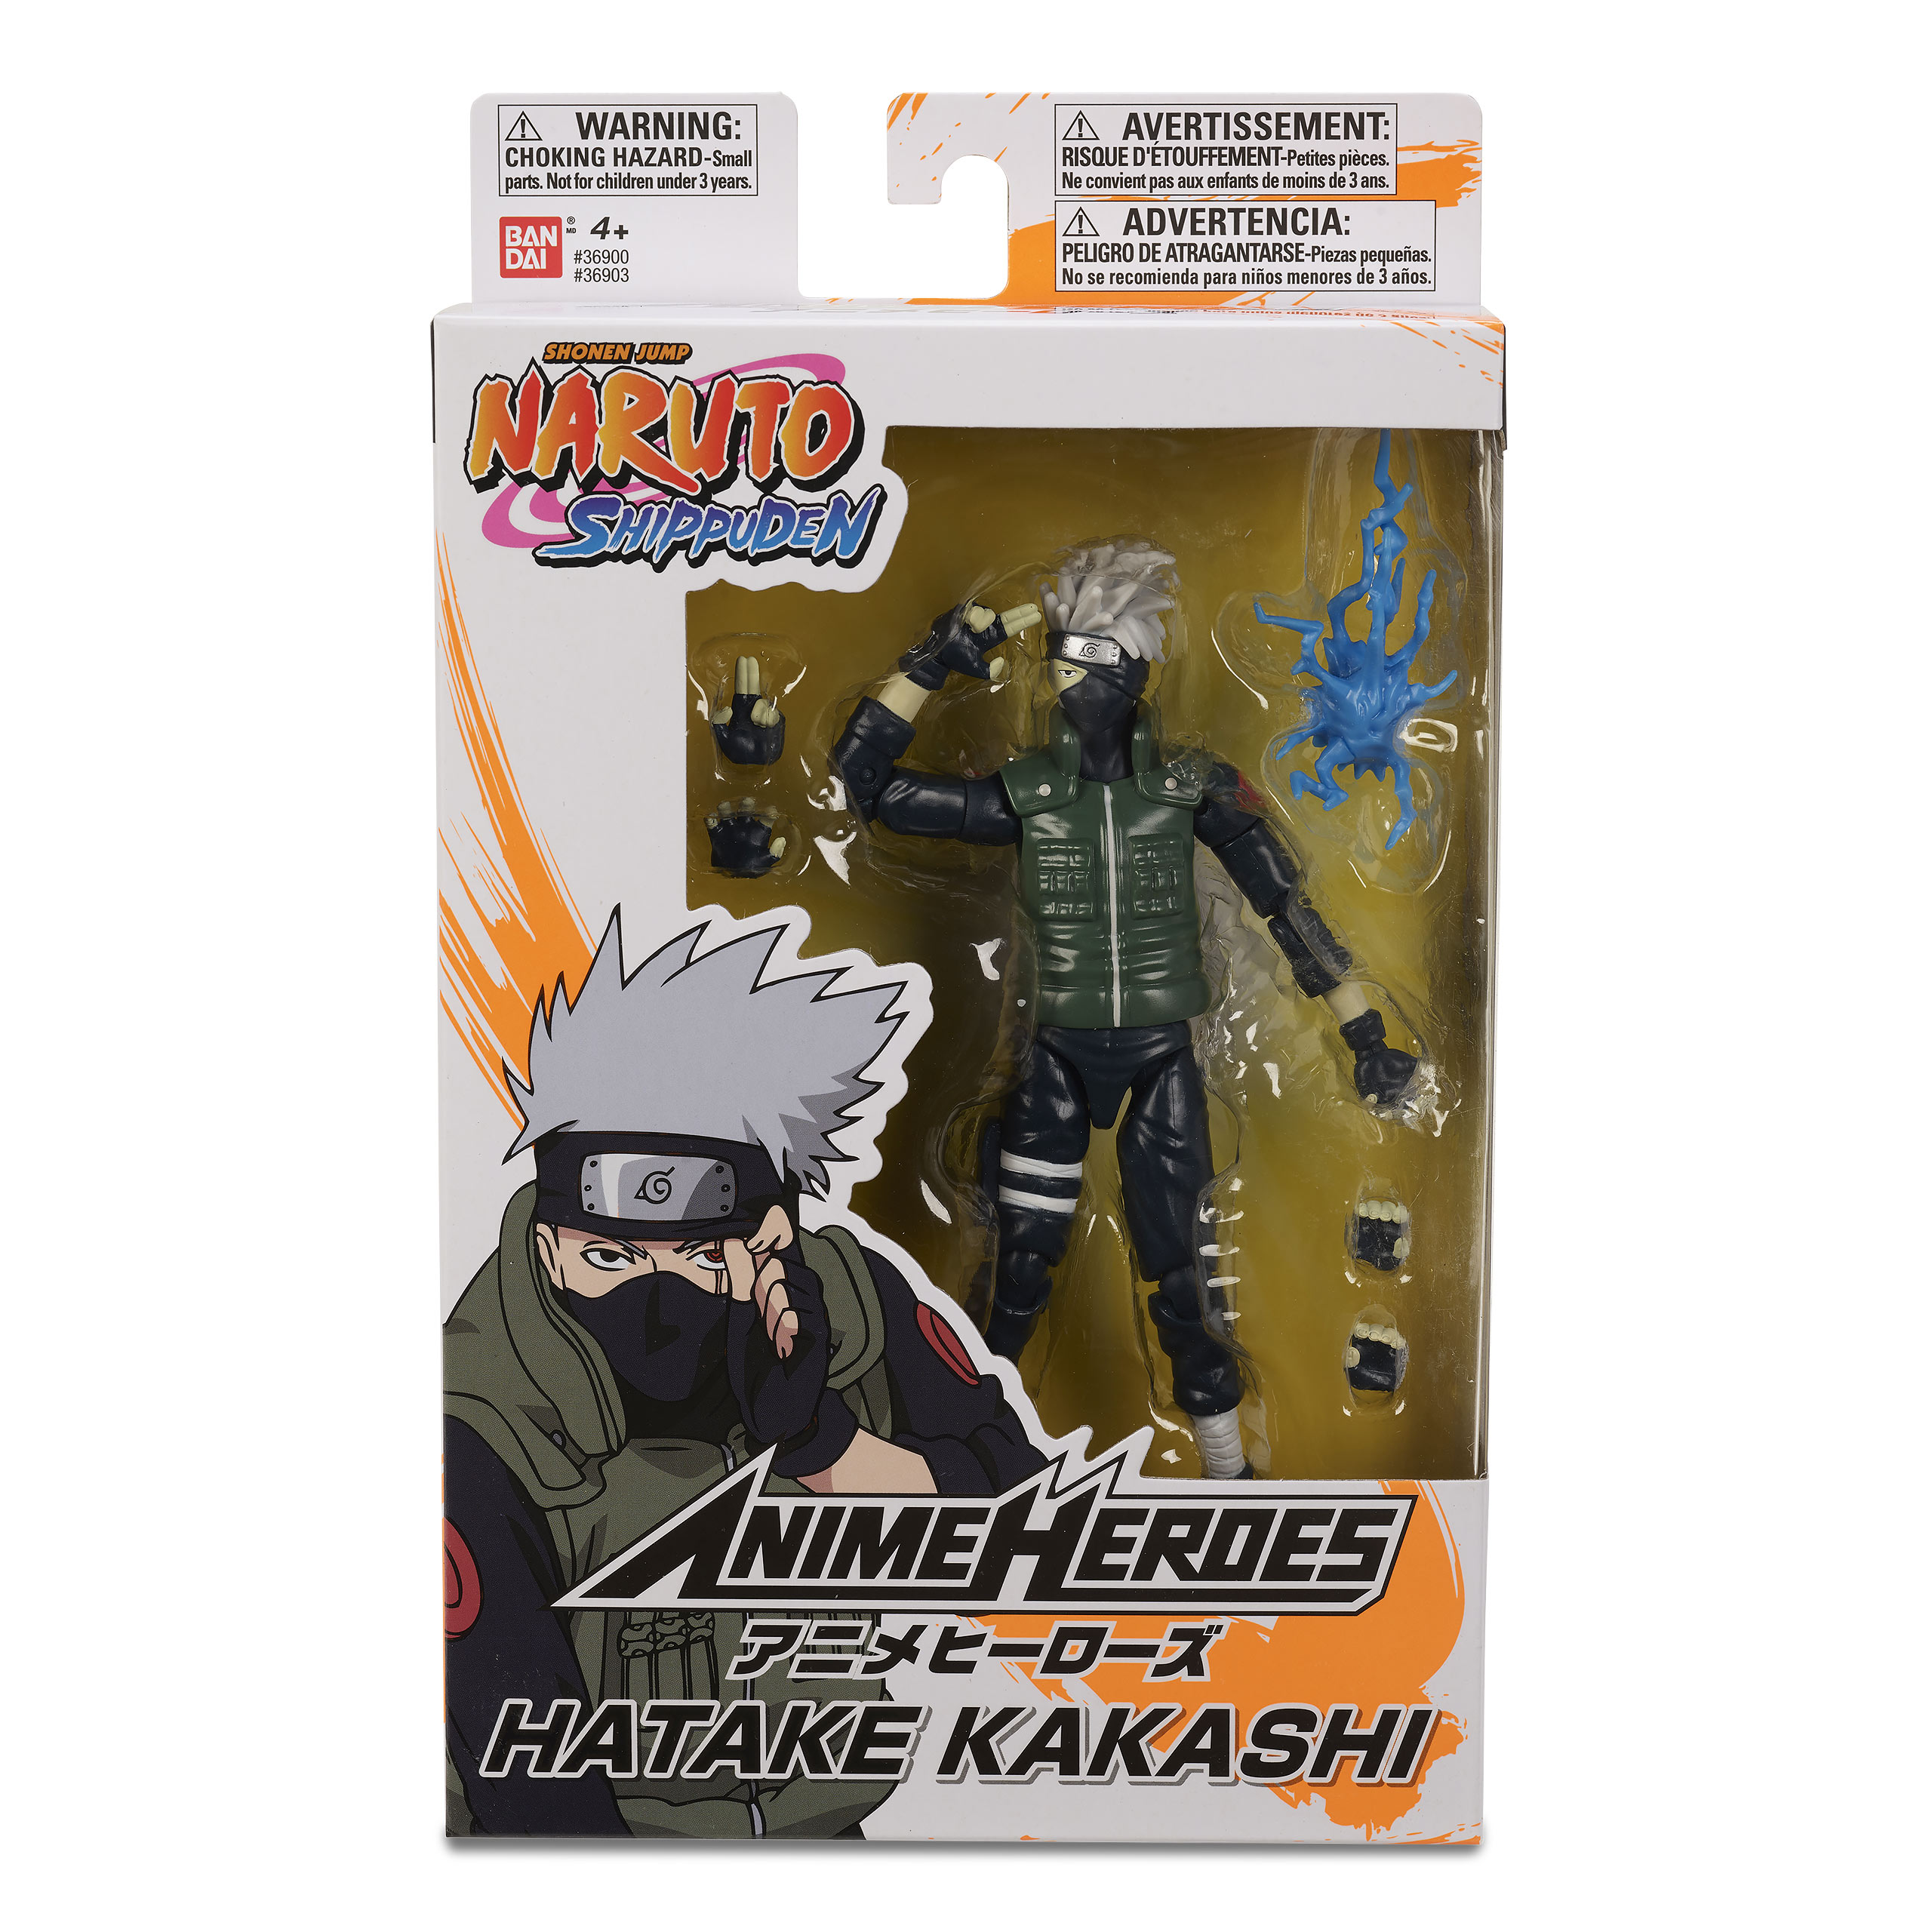 Naruto Shippuden - Hatake Kakashi Anime Heroes Action Figure